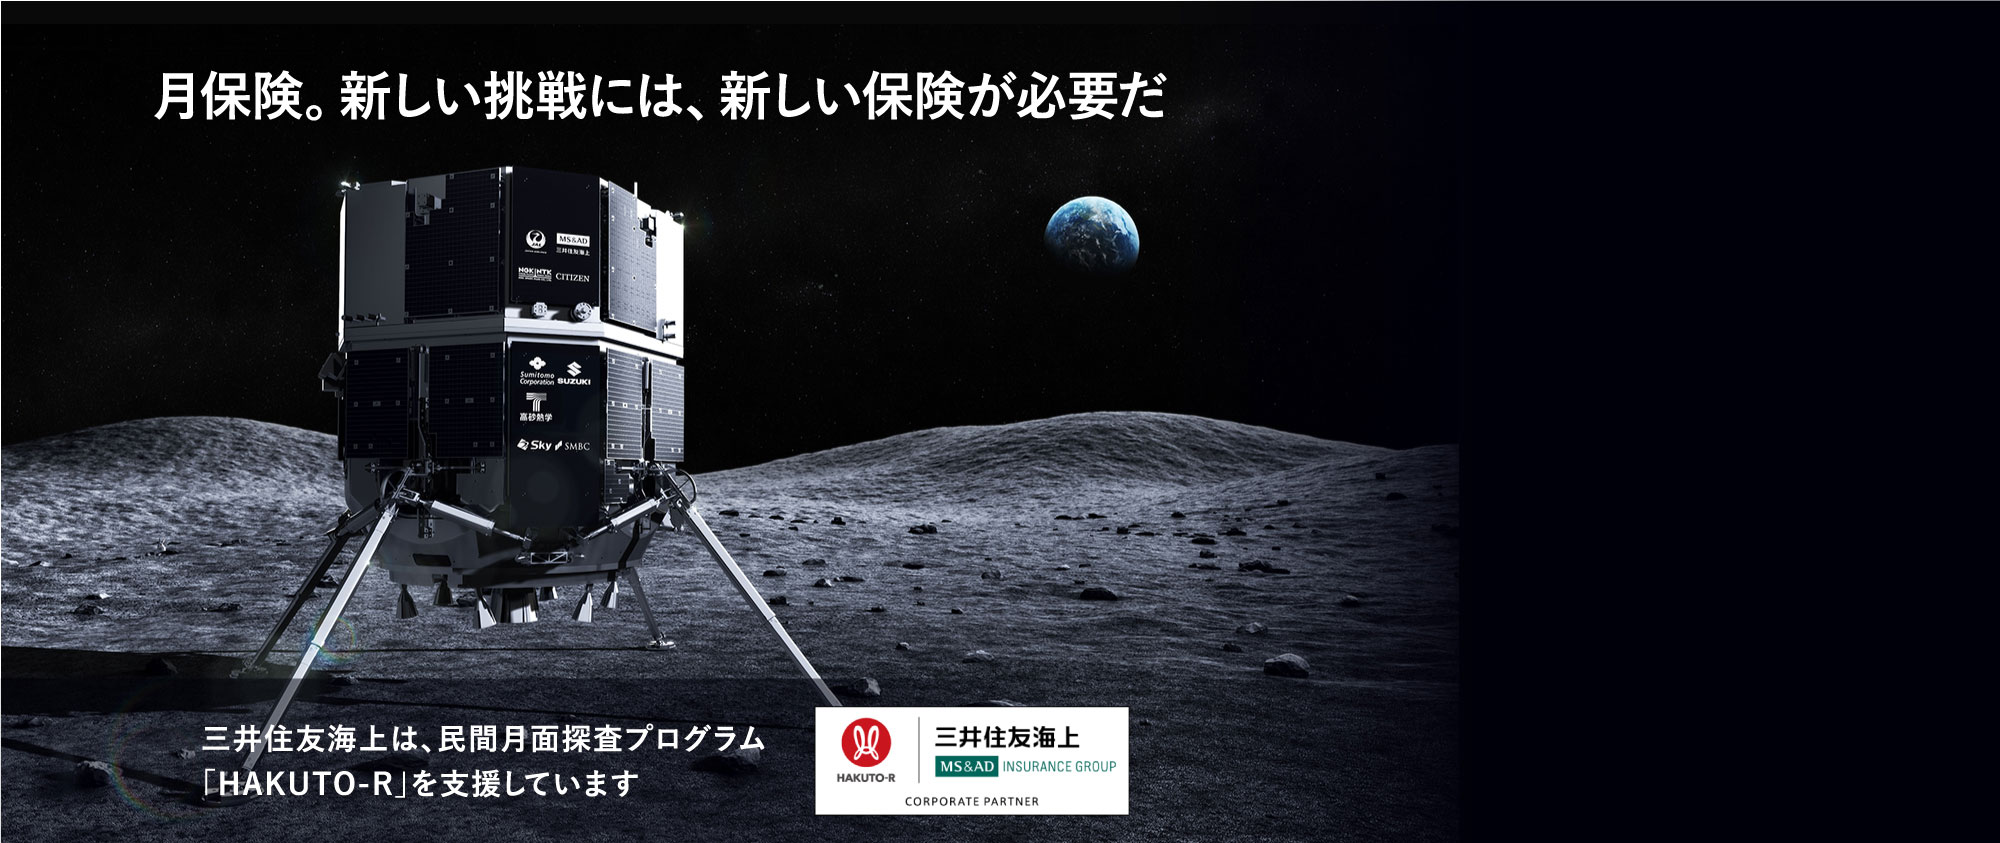 月保険。新しい挑戦には、新しい保険が必要だ 三井住友海上は、民間月面探査プログラム「HAKUTO-R」を支援しています